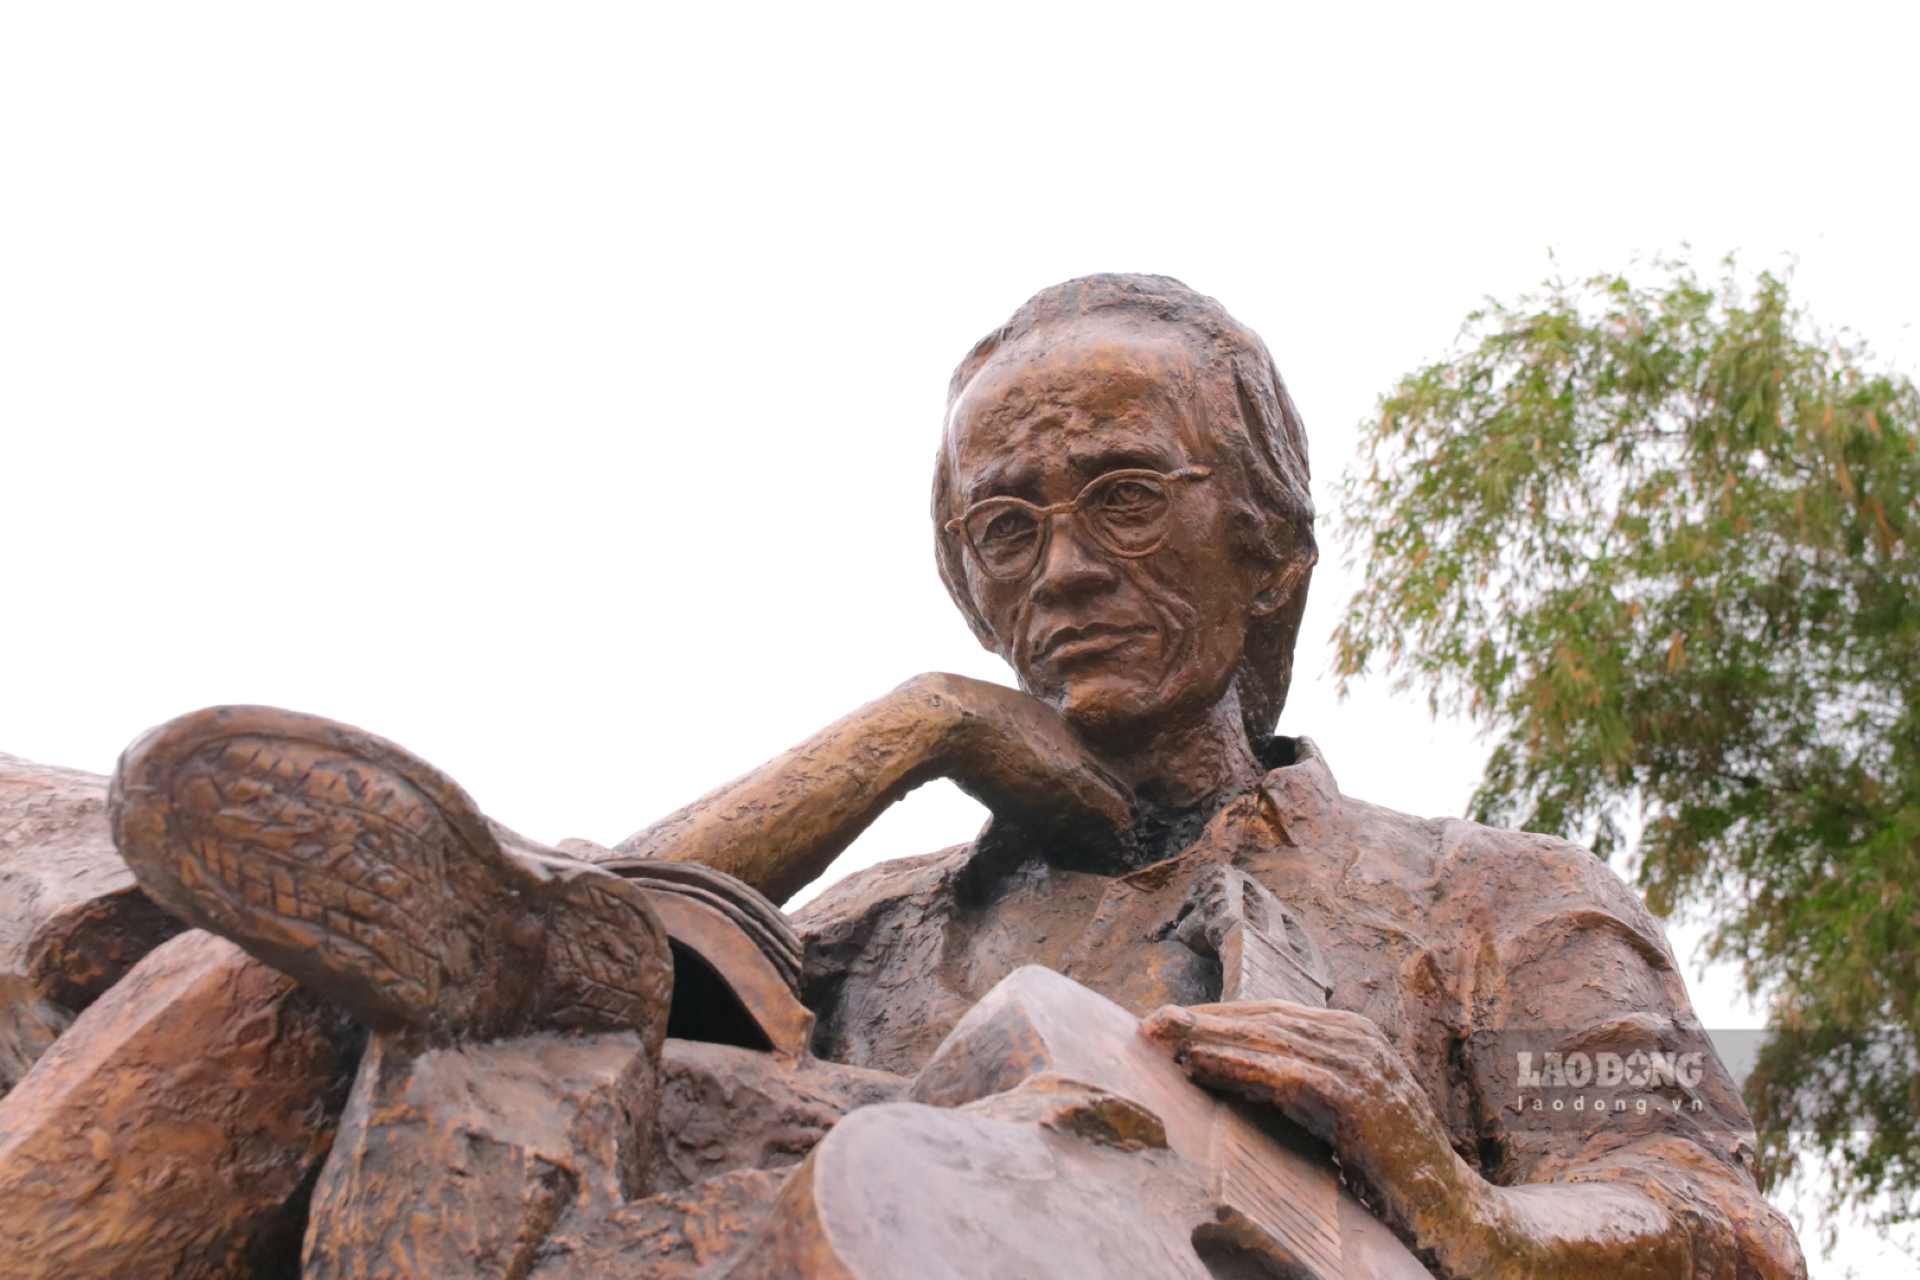 Phía trước bệ tượng được gắn bảng đồng ghi nội dung “Trịnh Công Sơn (1939 - 2001)”, phía sau “Tác giả: Điêu khắc gia Trương Đình Quế” và “Người tặng: Ông Lê Hùng Mạnh, Quận 1, Thành phố Hồ Chí Minh”.